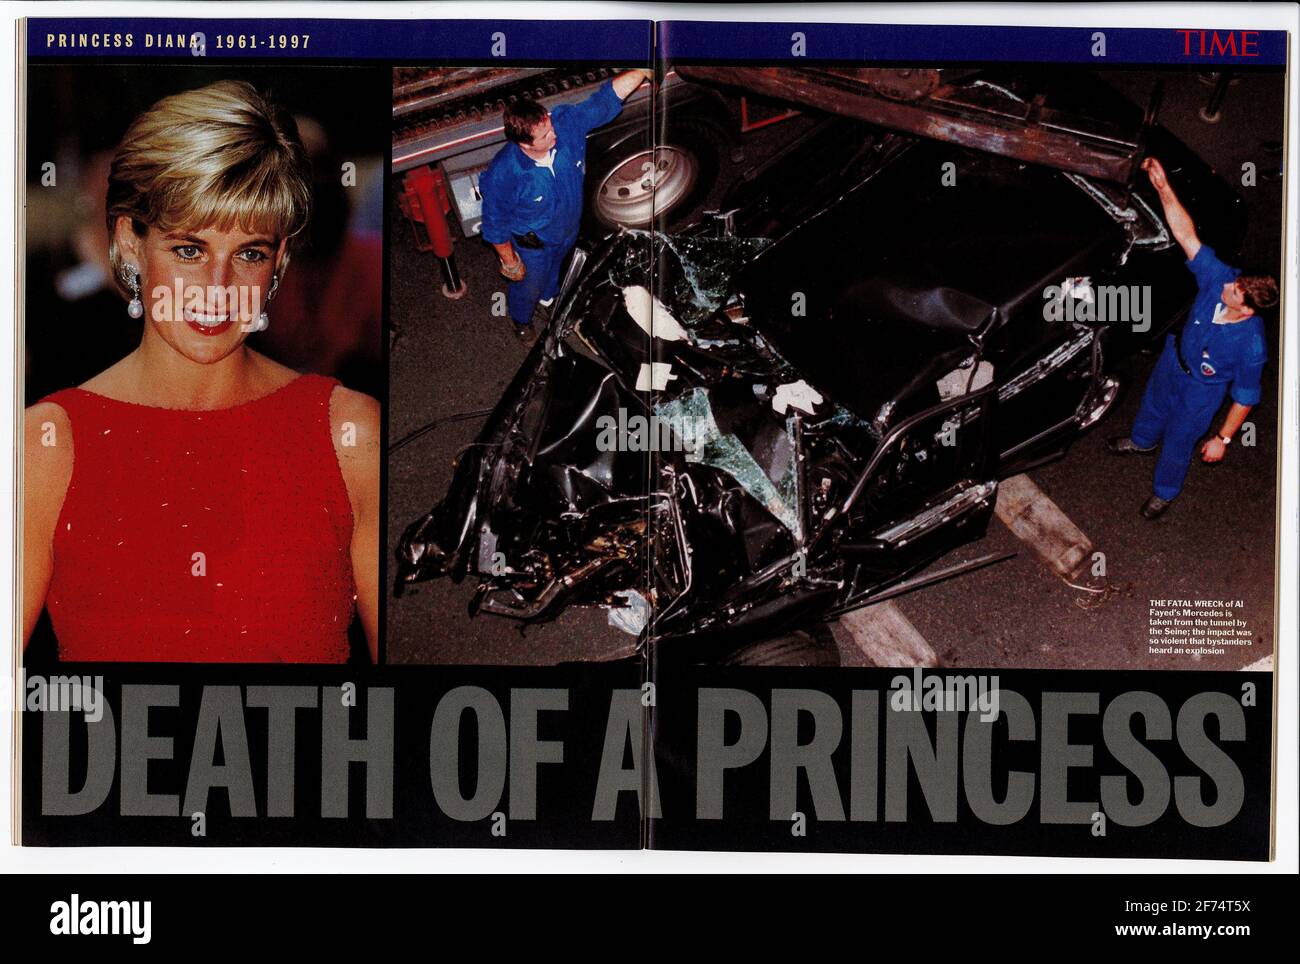 Titular de la revista Time sobre la muerte de la princesa Diana Foto de stock